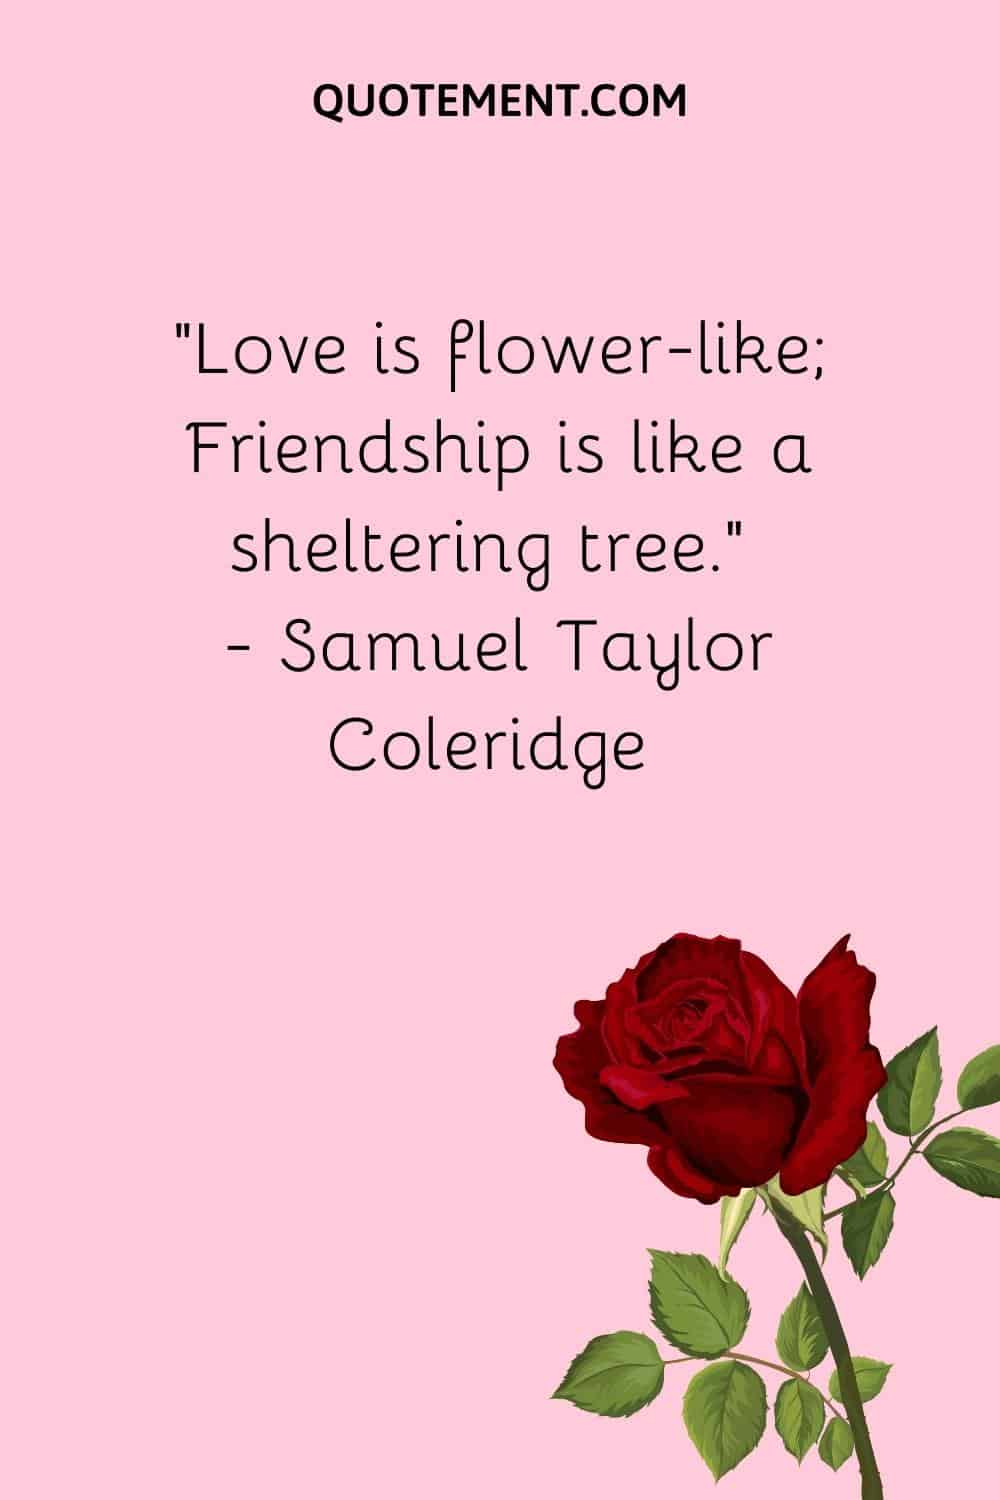 “Love is flower-like; Friendship is like a sheltering tree.” — Samuel Taylor Coleridge